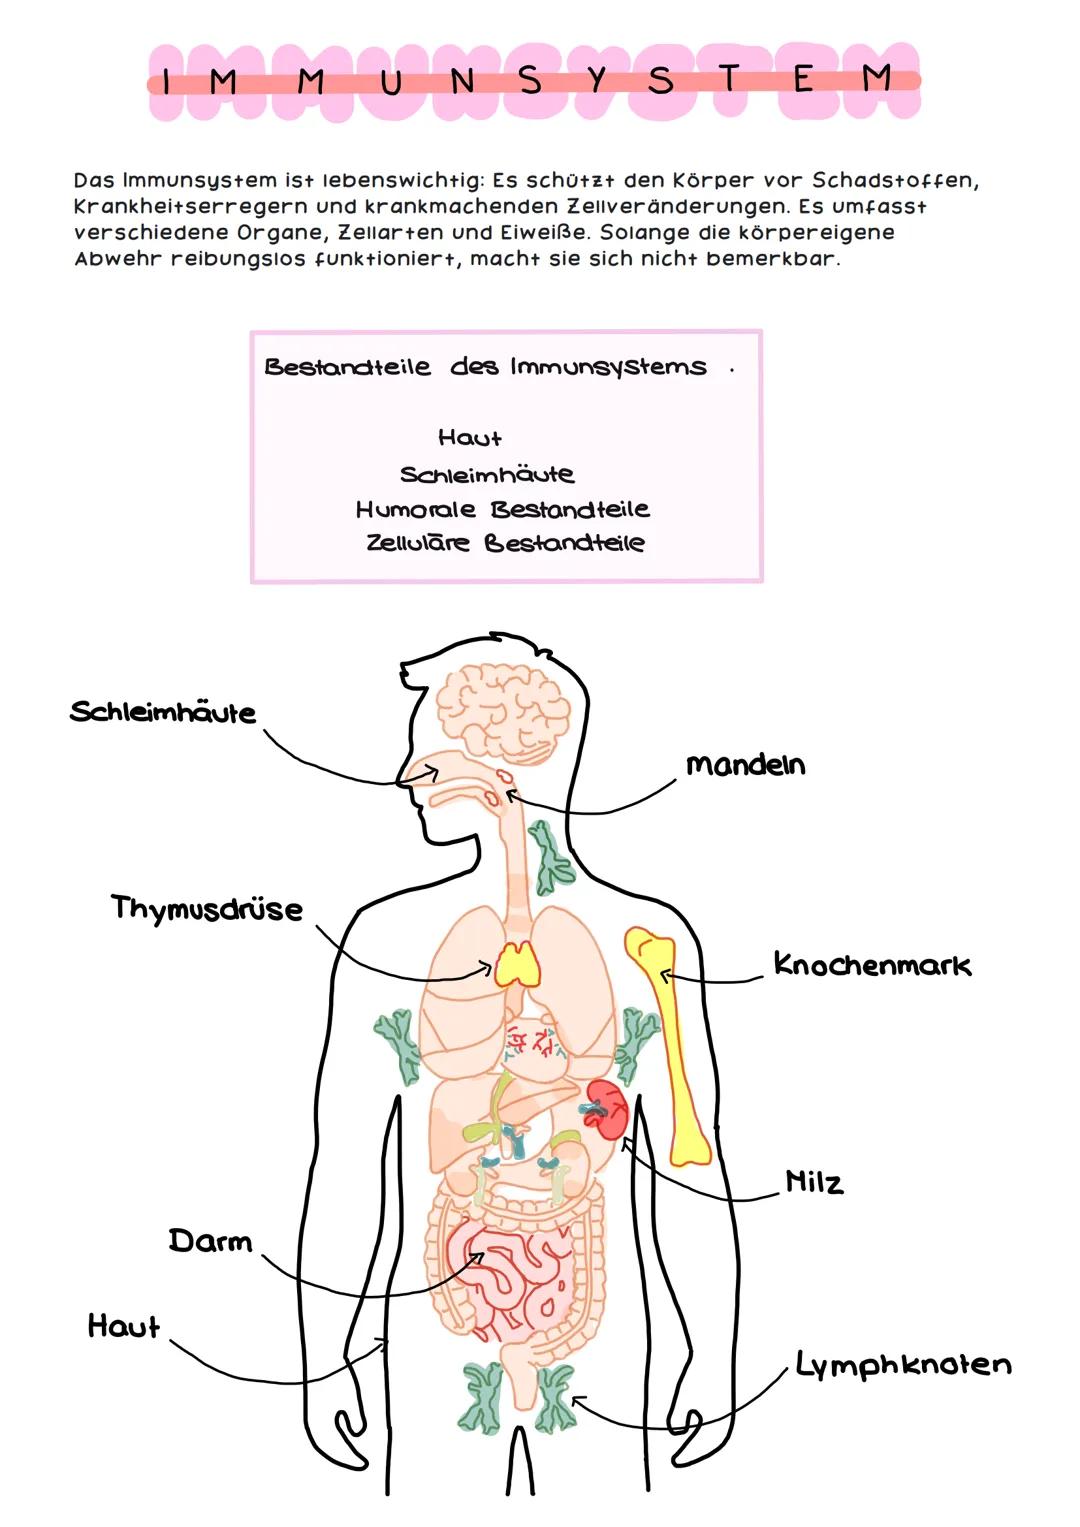 IM M MUNSYSTEM
Das Immunsystem ist lebenswichtig: Es schützt den Körper vor Schadstoffen,
Krankheitserregern und krankmachenden Zellveränder